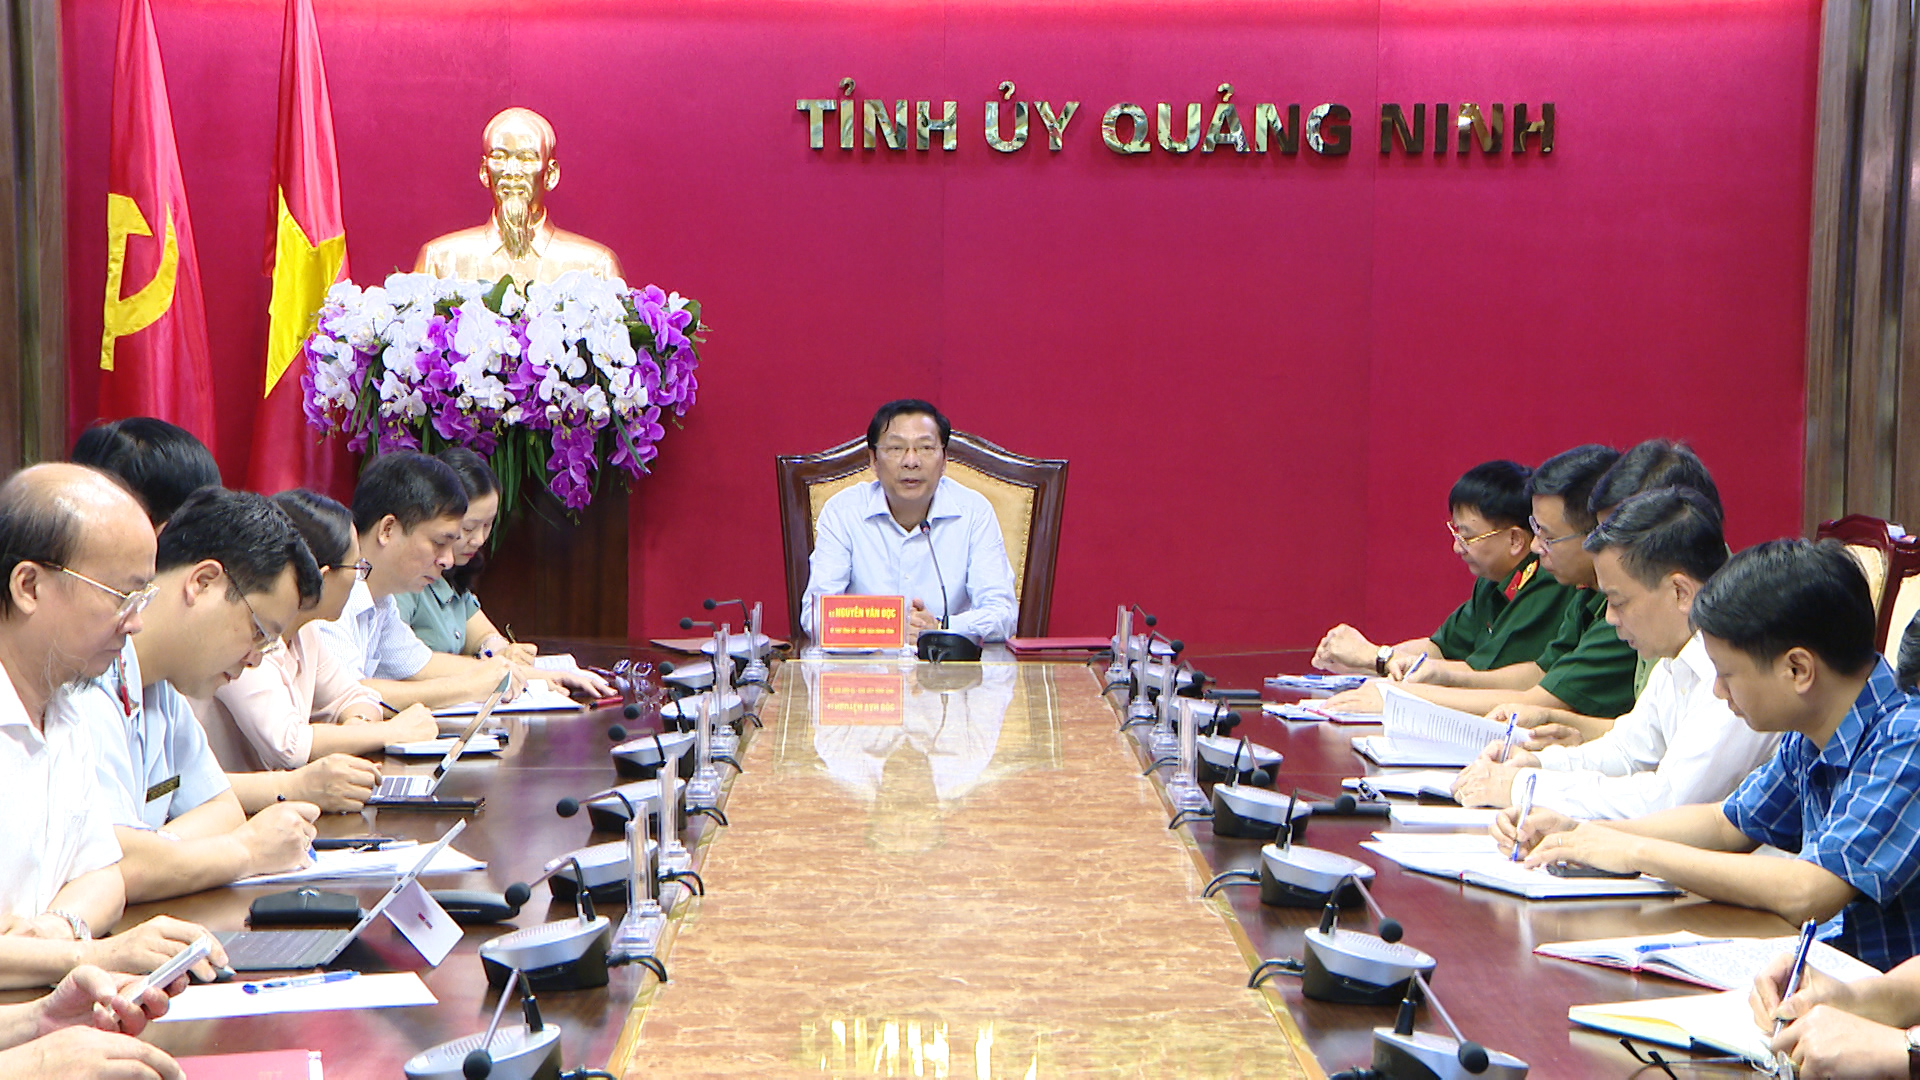 Đồng chí Nguyễn Văn Đọc, Bí thư Tỉnh ủy, Chủ tịch HĐND tỉnh, phát biểu chỉ đạo cuộc họp.